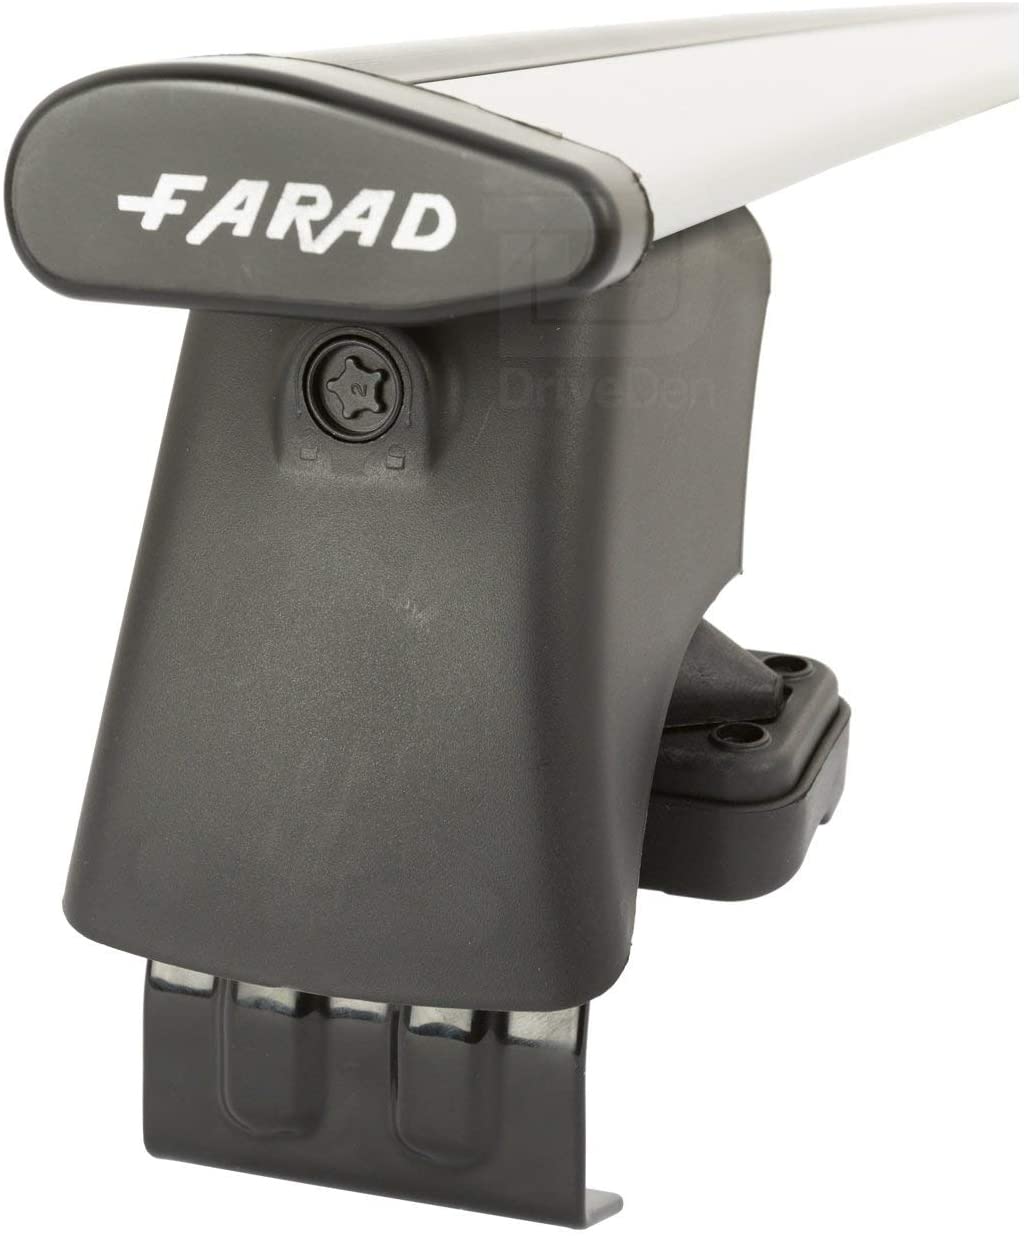 FARAD-Kit H2 per barre portatutto - Ford Fiesta 2002-2008 (senza corrimano)